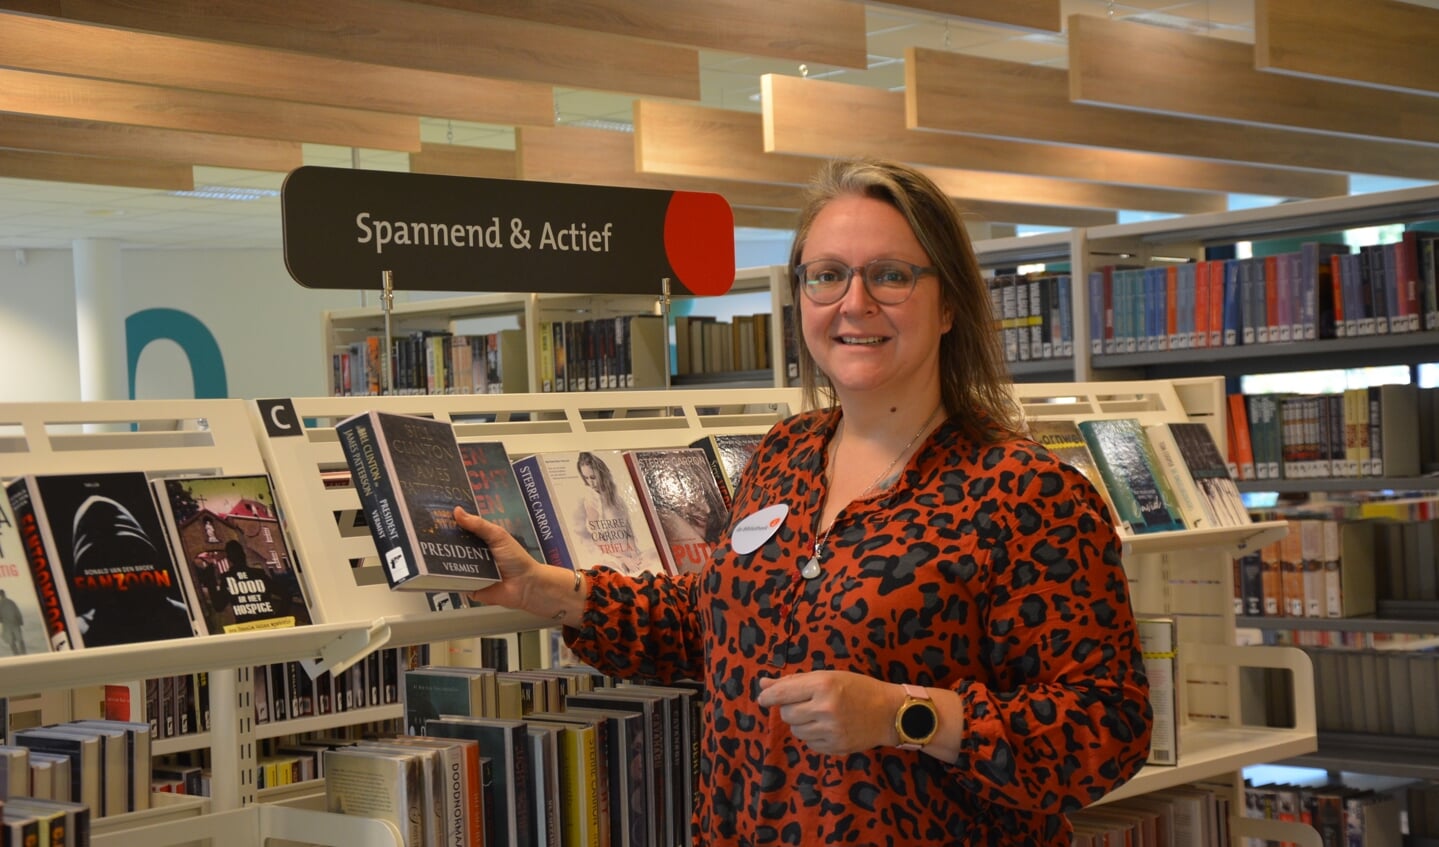  Daniëlle Colen vertelt waar de bibliotheek zich allemaal voor inzet. Foto: Dick van der Veen 